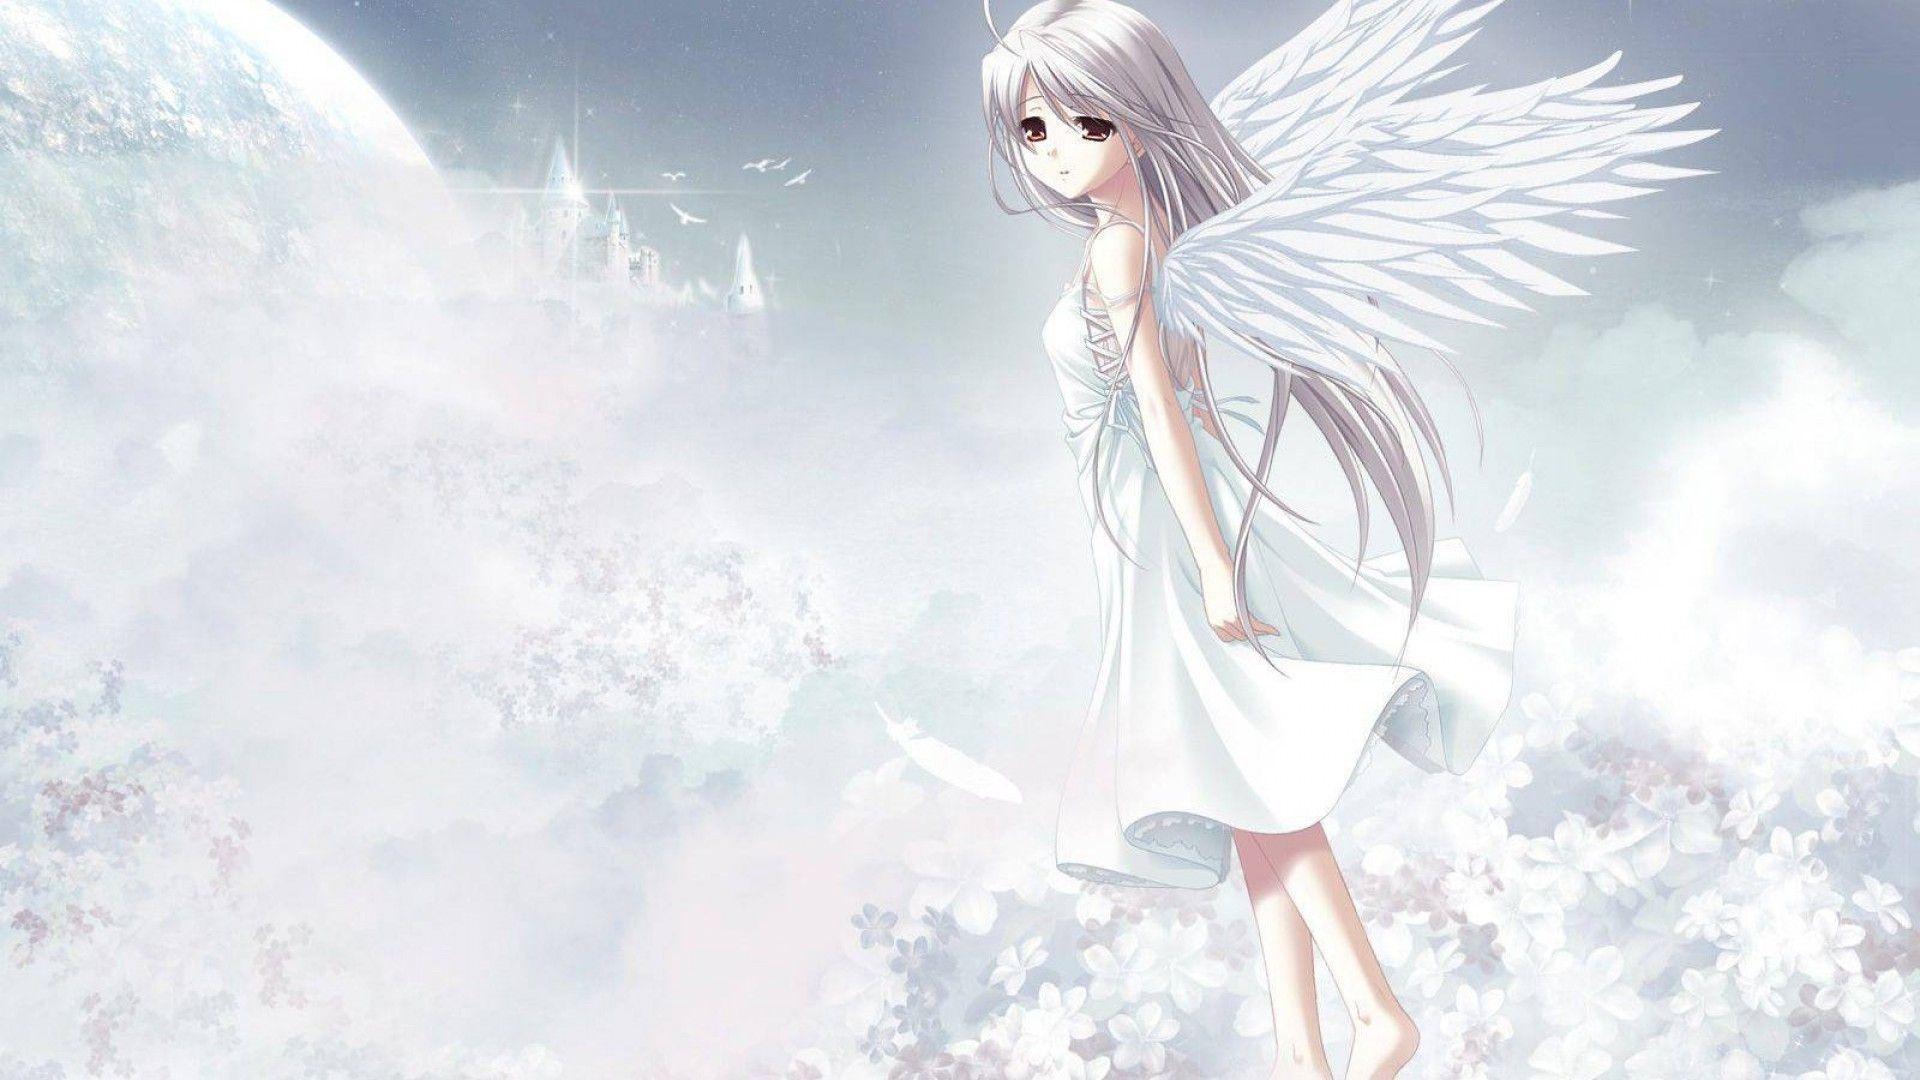 Anime Angel Girl Wallpaper Free Anime Angel Girl